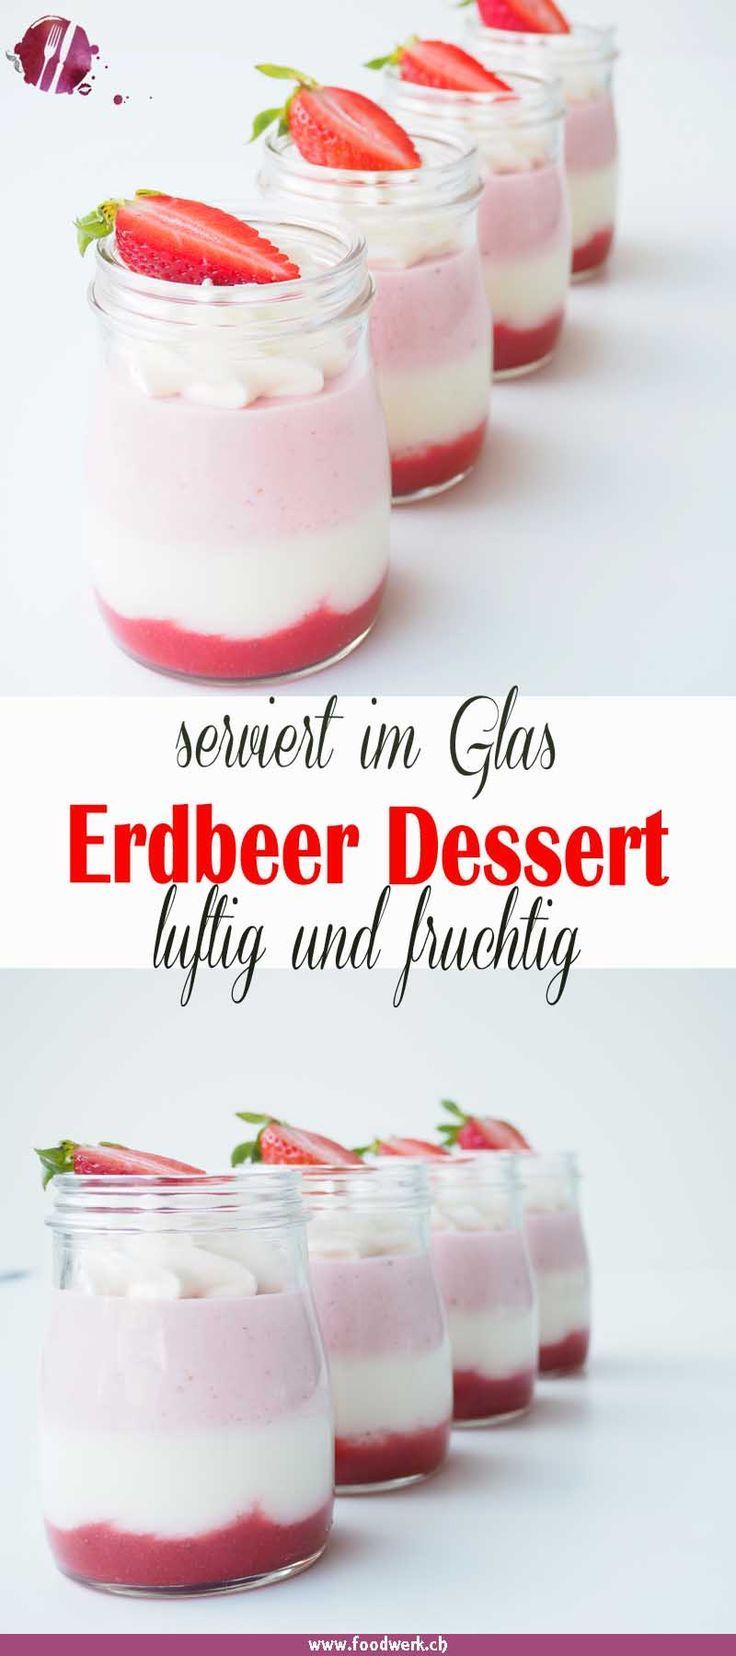 Leichtes Schichtdessert mit Erdbeeren -   17 desserts Im Glas hochzeit ideas